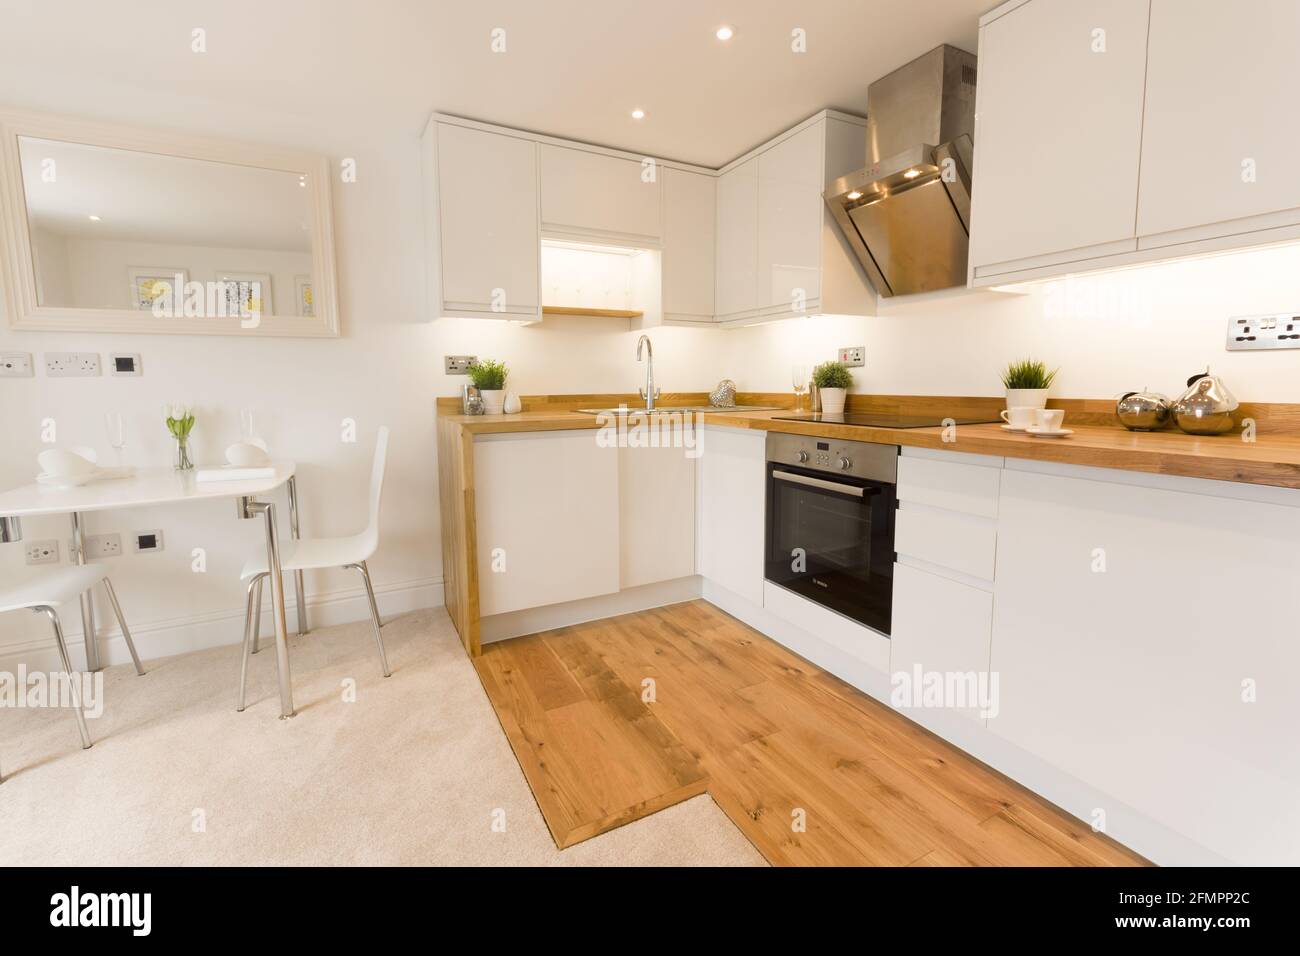 Un moderno appartamento cucina con ripiani in legno tavolo armadio ed elettrodomestici da cucina Foto Stock